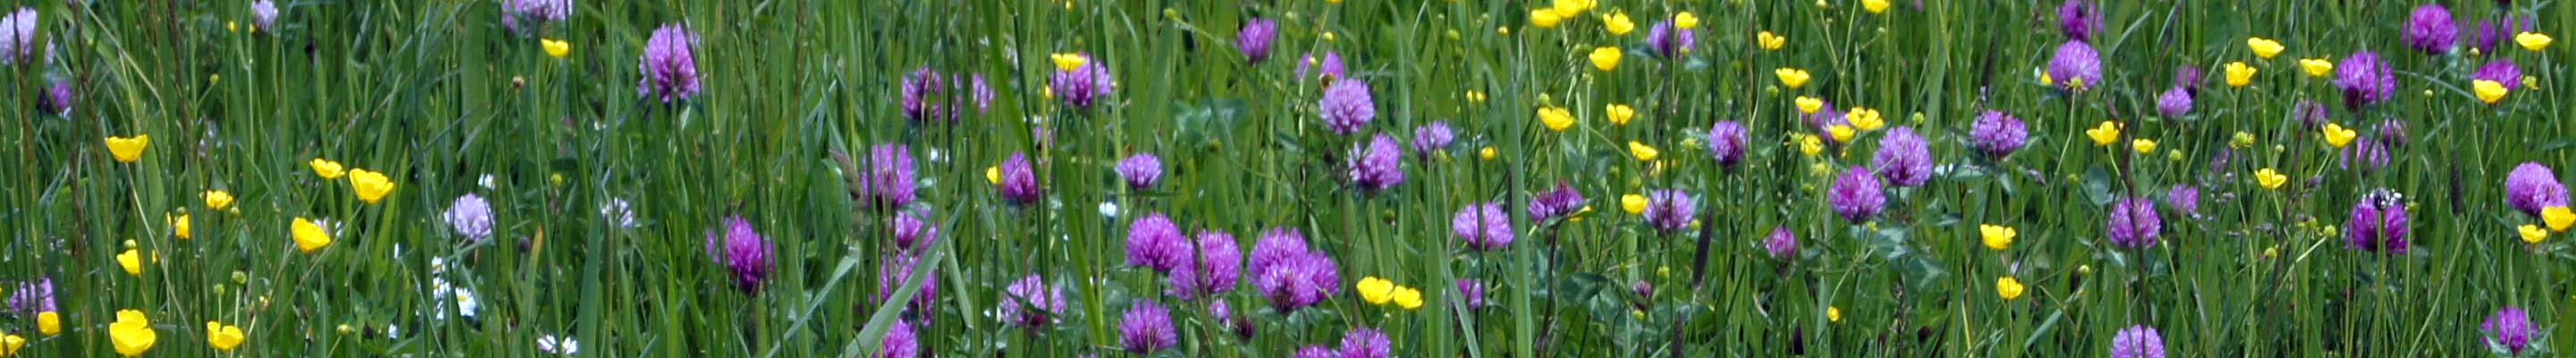 Sommerwiese - so wie wir sie aus unserer Kindheit noch kennen - mit blühendem Klee, Hahnenfuß und vielen anderen Wildblumen